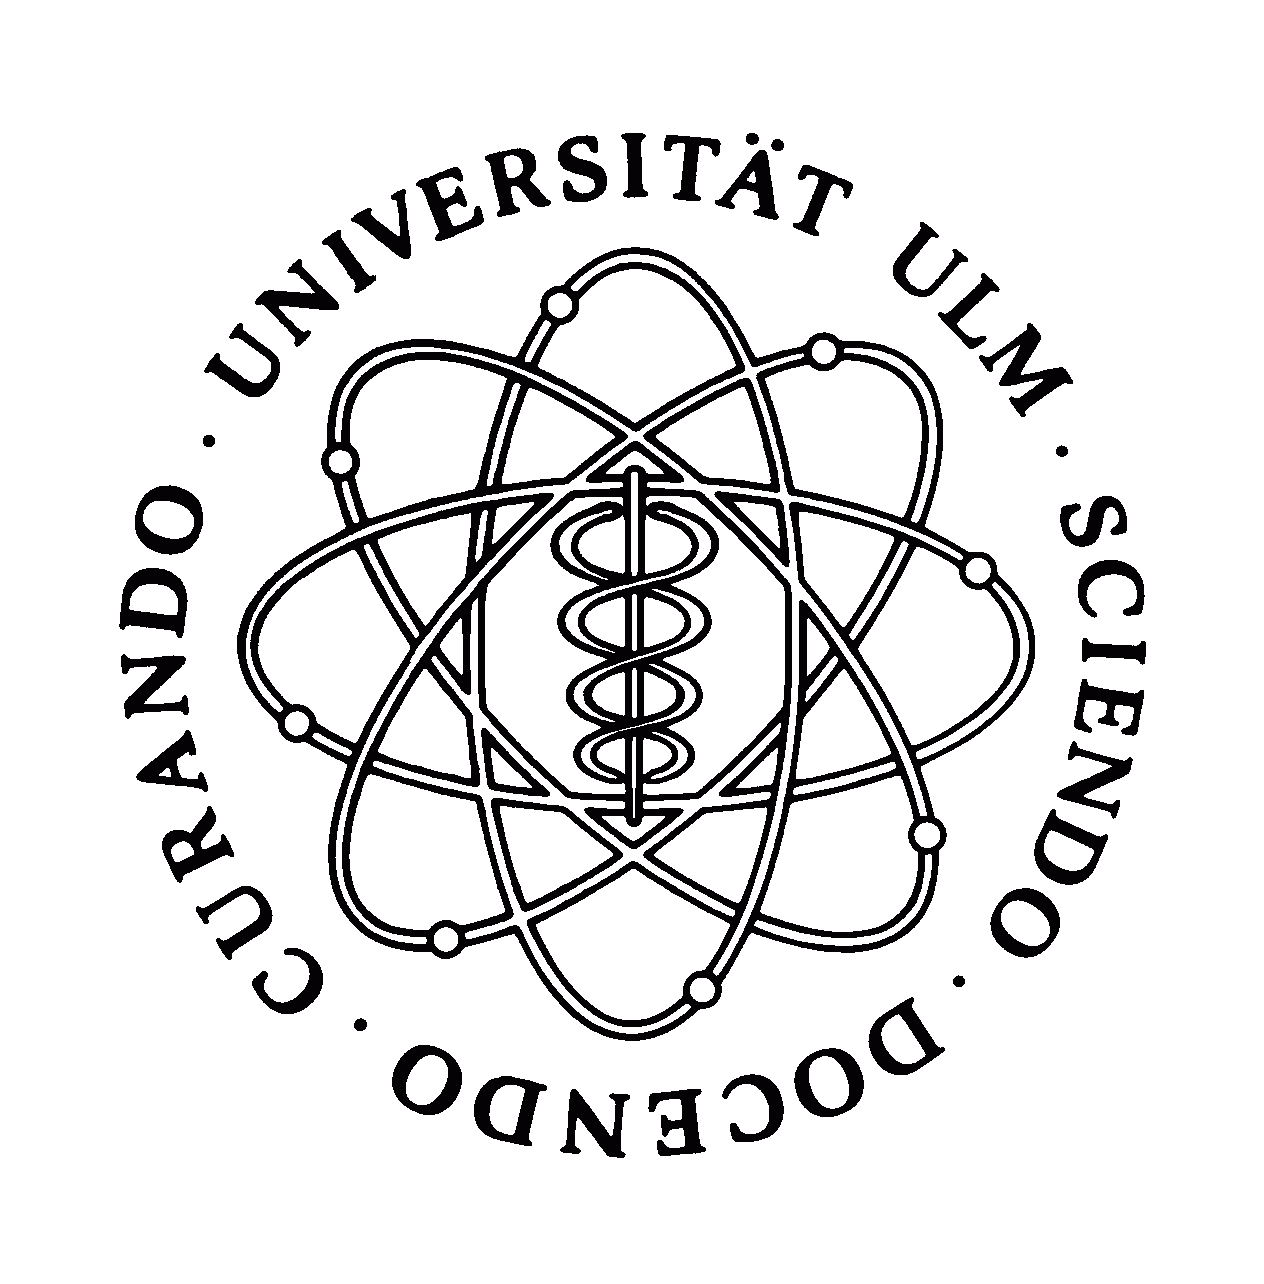 Университетская клиника Ульма - Германия